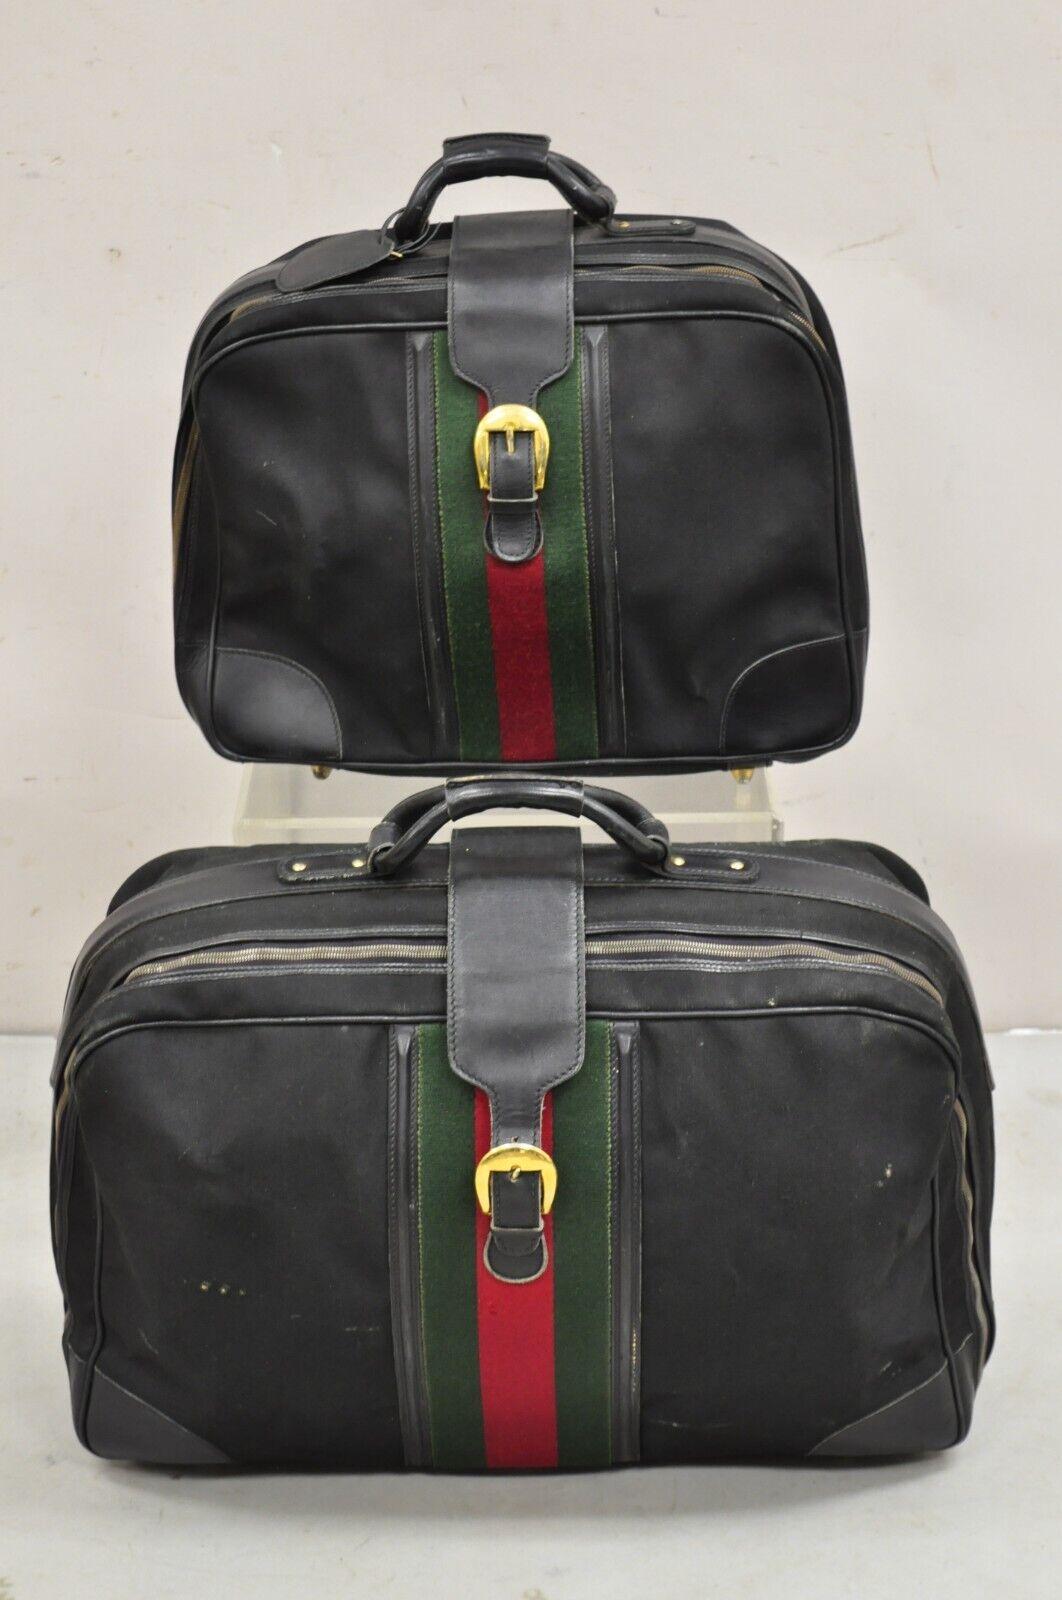 Vintage Gucci Black Canvas & Leather Suitcase Luggage Travel Bag Set - 2 Pcs For Sale 10